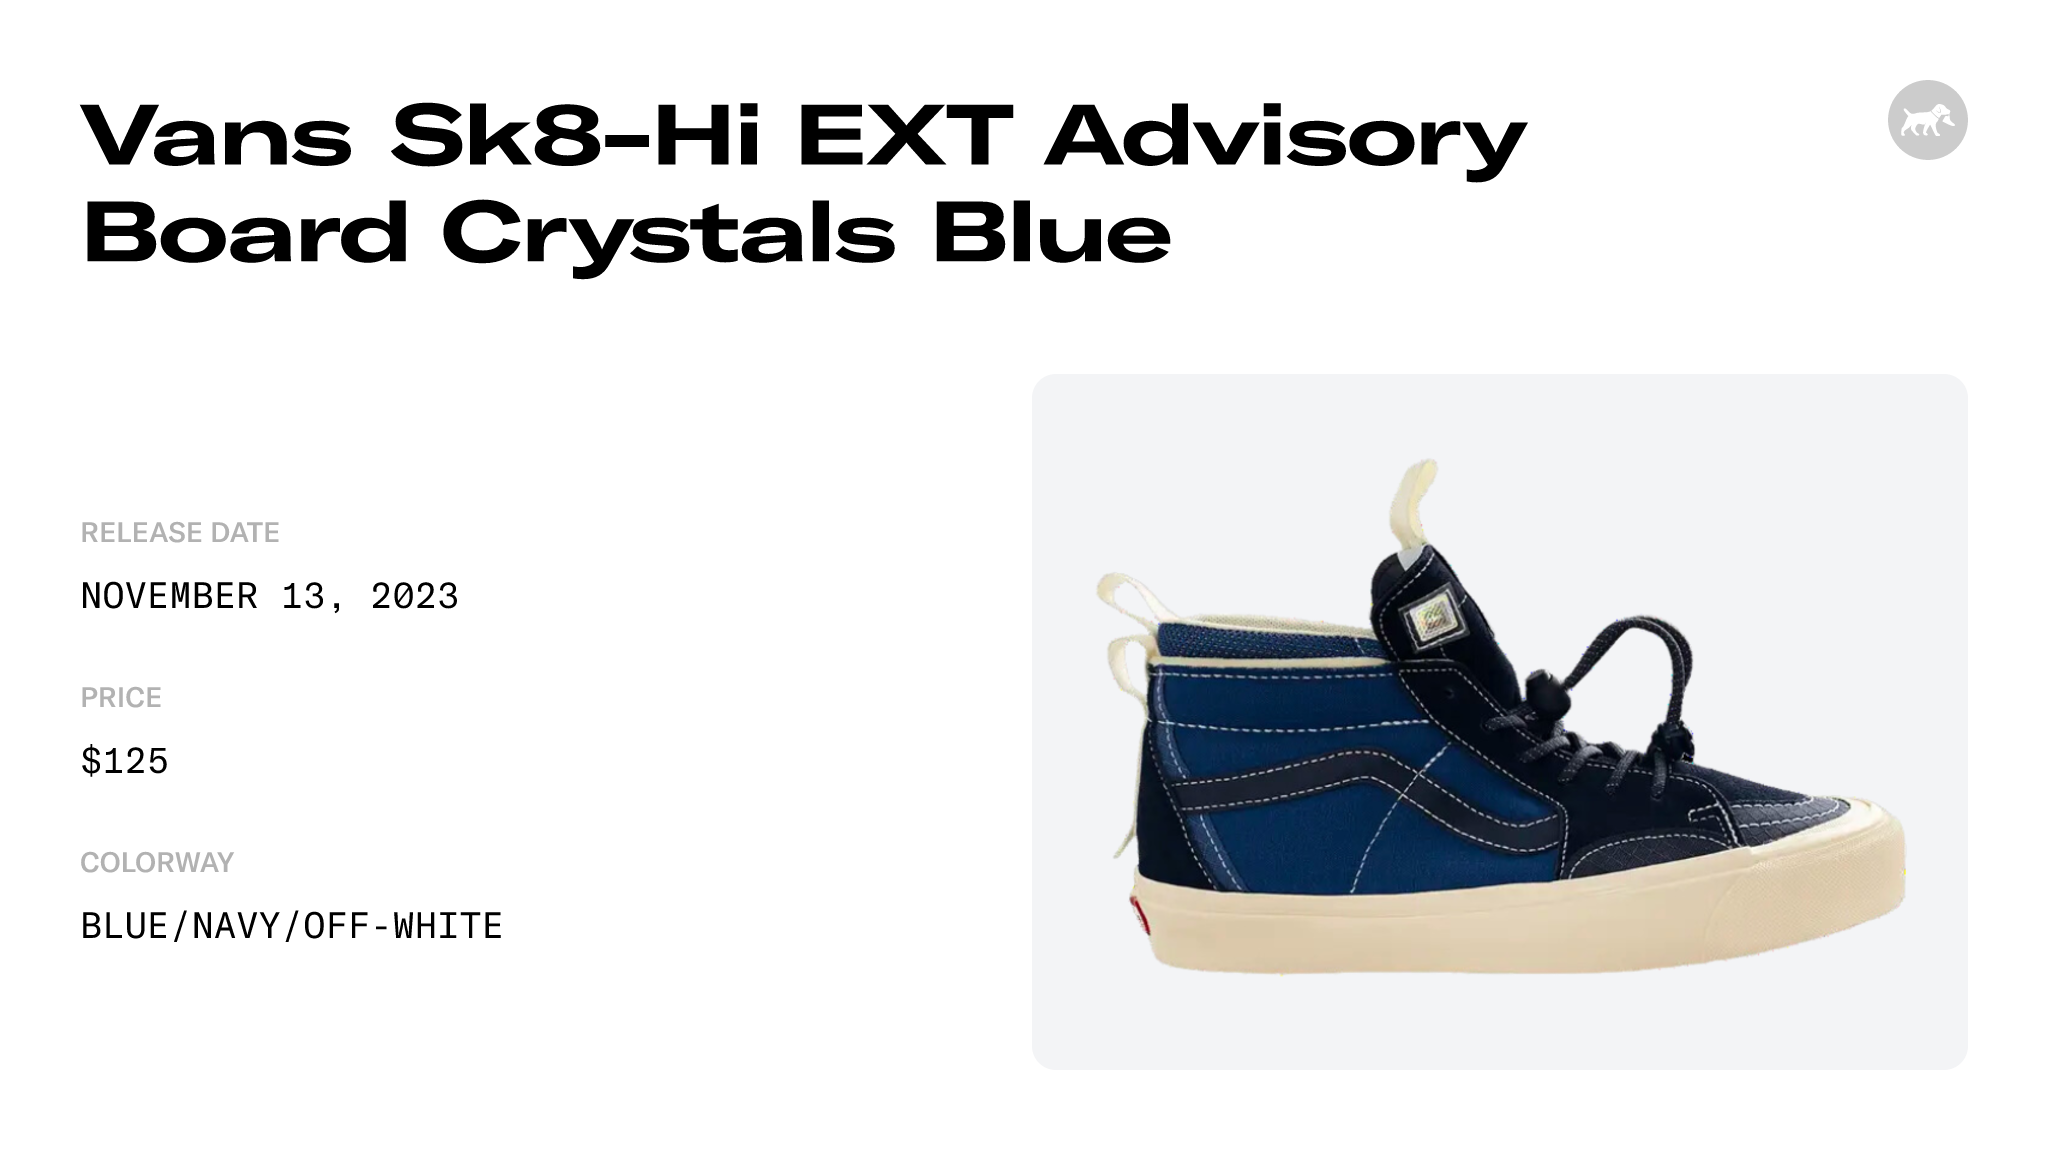 Men's shoes Vans Vault x Advisory Board Crystals SK8-Hi EXT